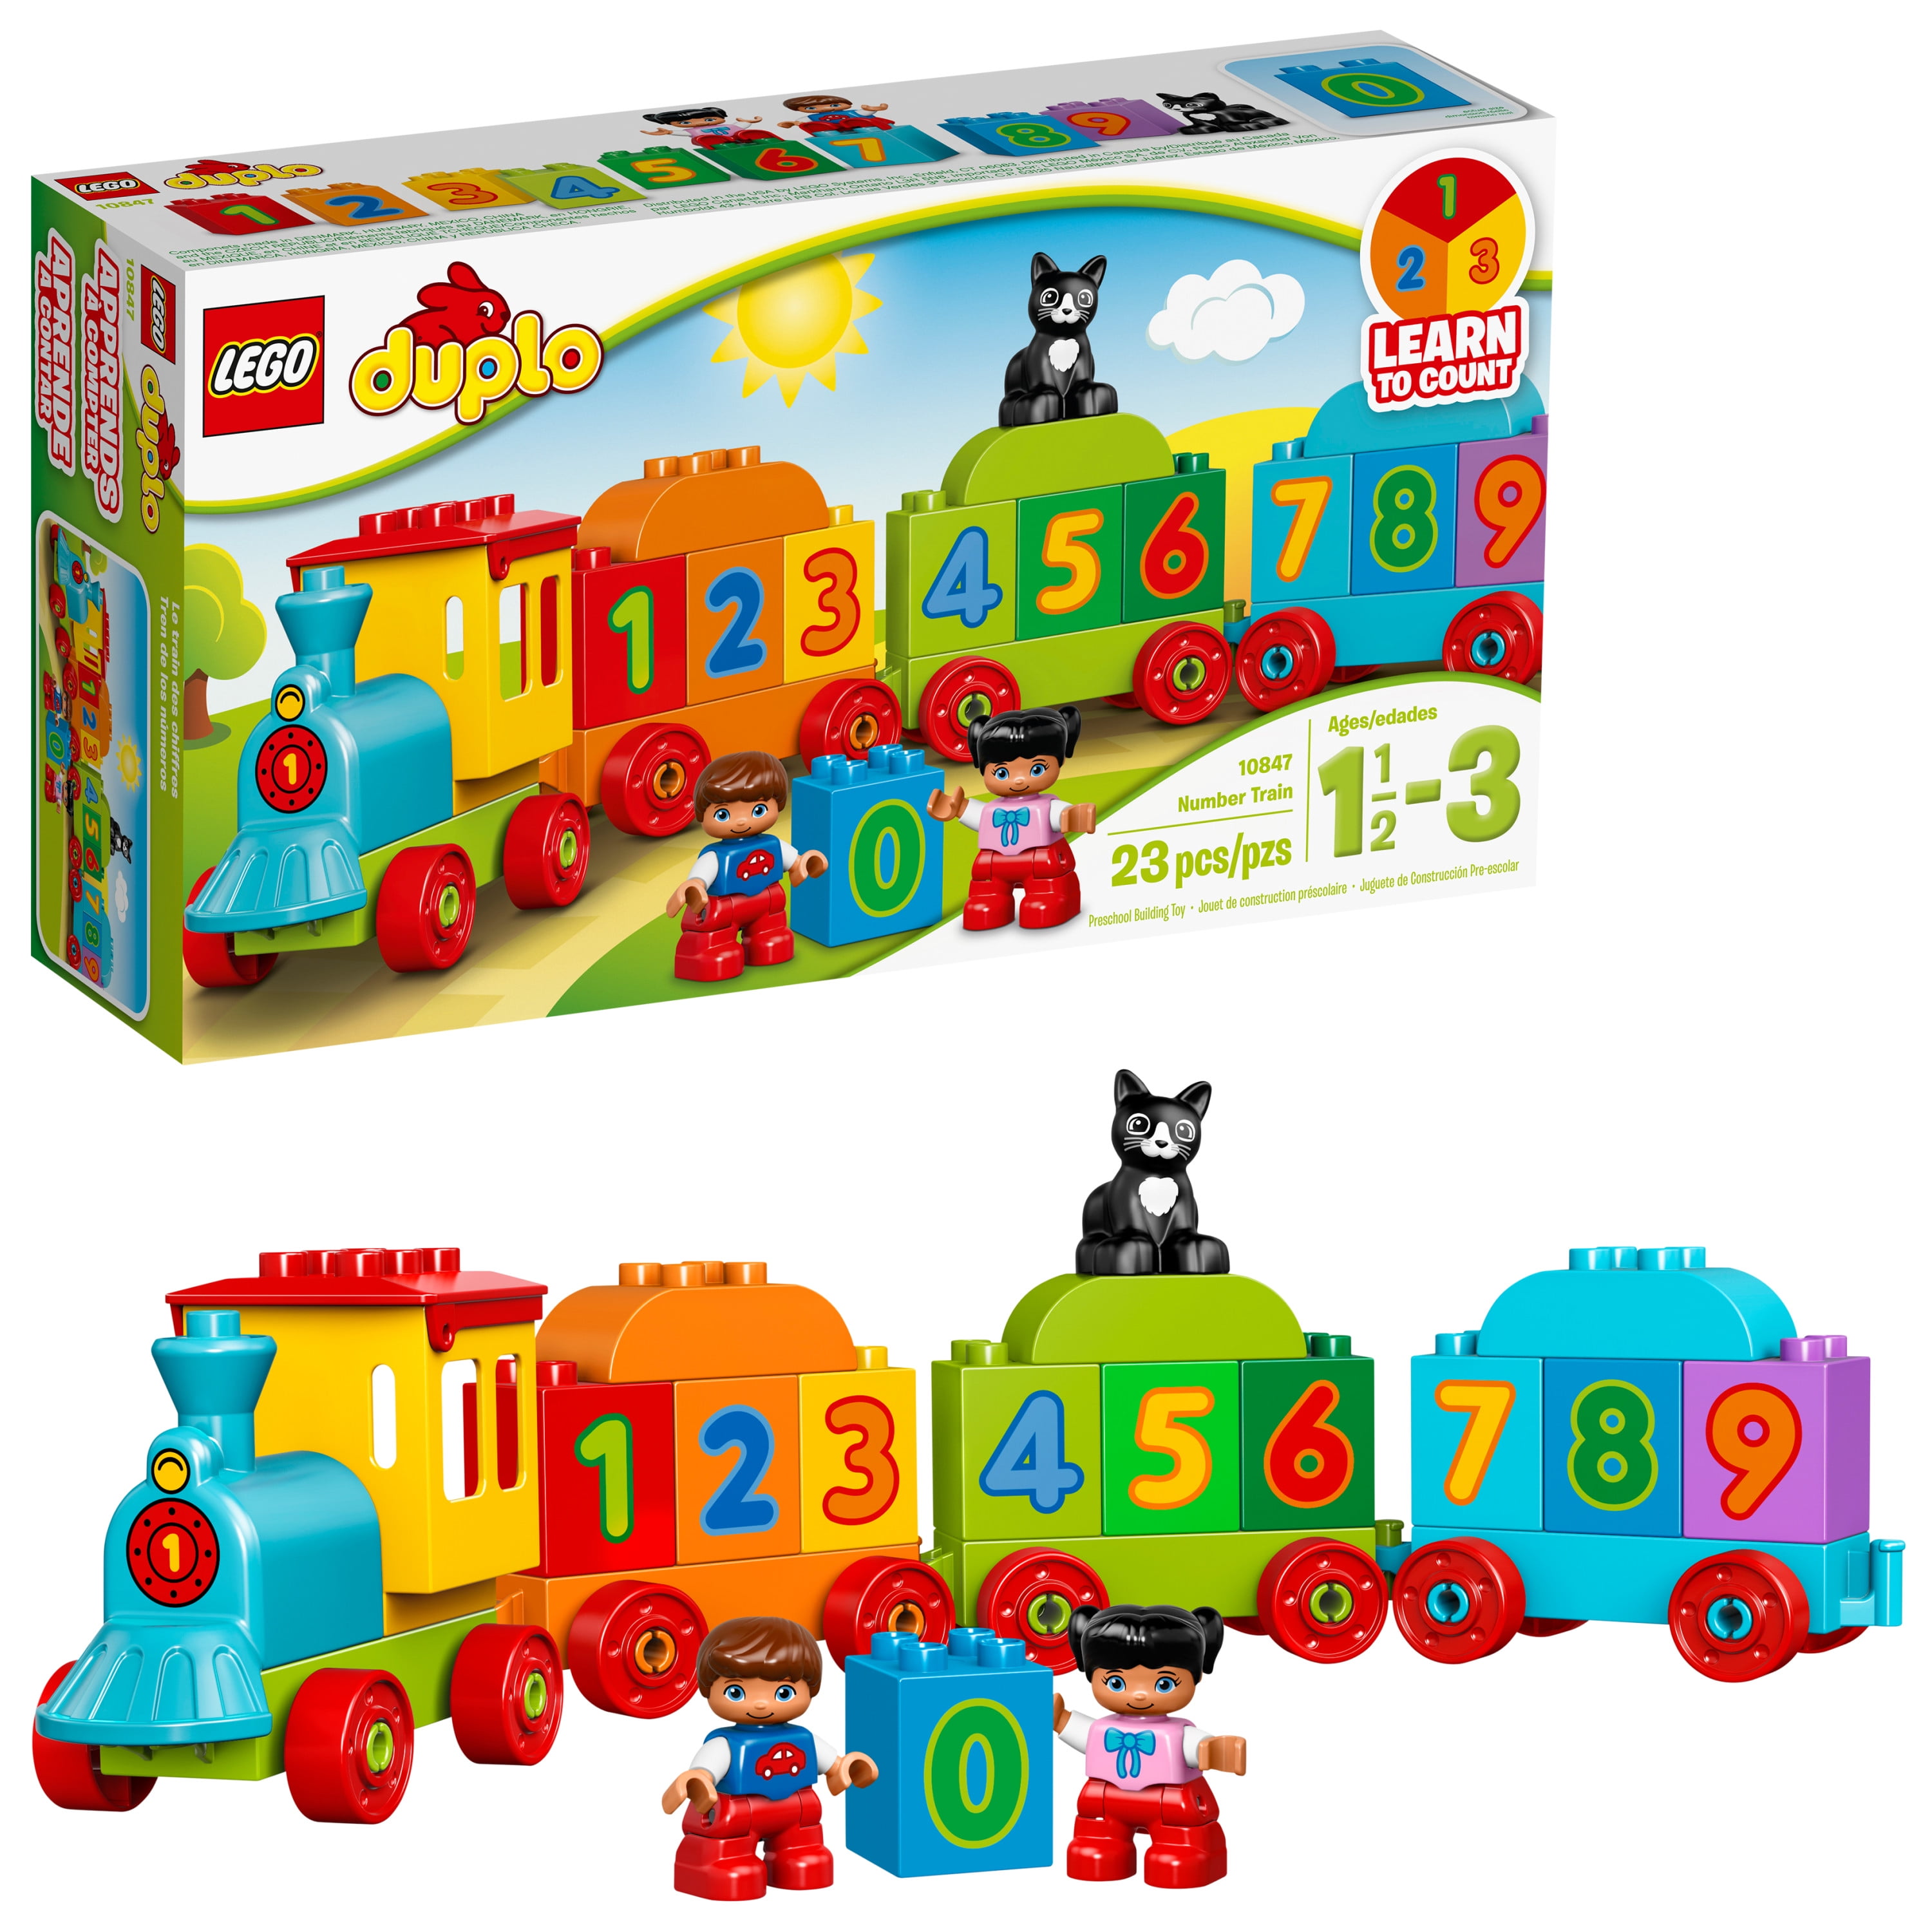 LEGO Duplo Town Tren de Vapor +2 años